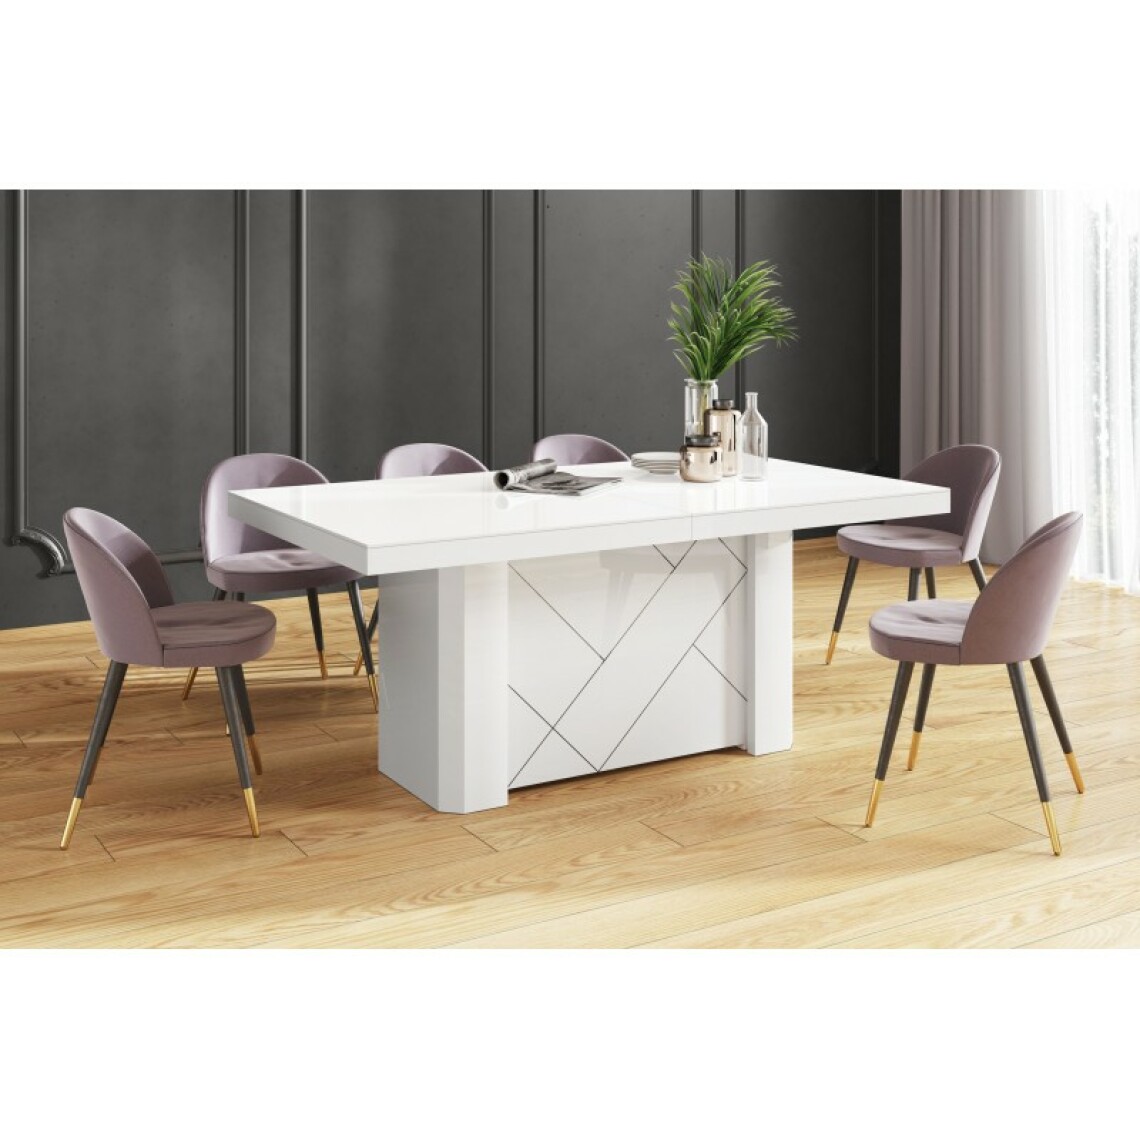 Carellia - Table à manger évolutive (180 cm-223 cm-286 cm-349 cm -468 cm) x 100 cm x 75 cm - Blanc - Tables à manger